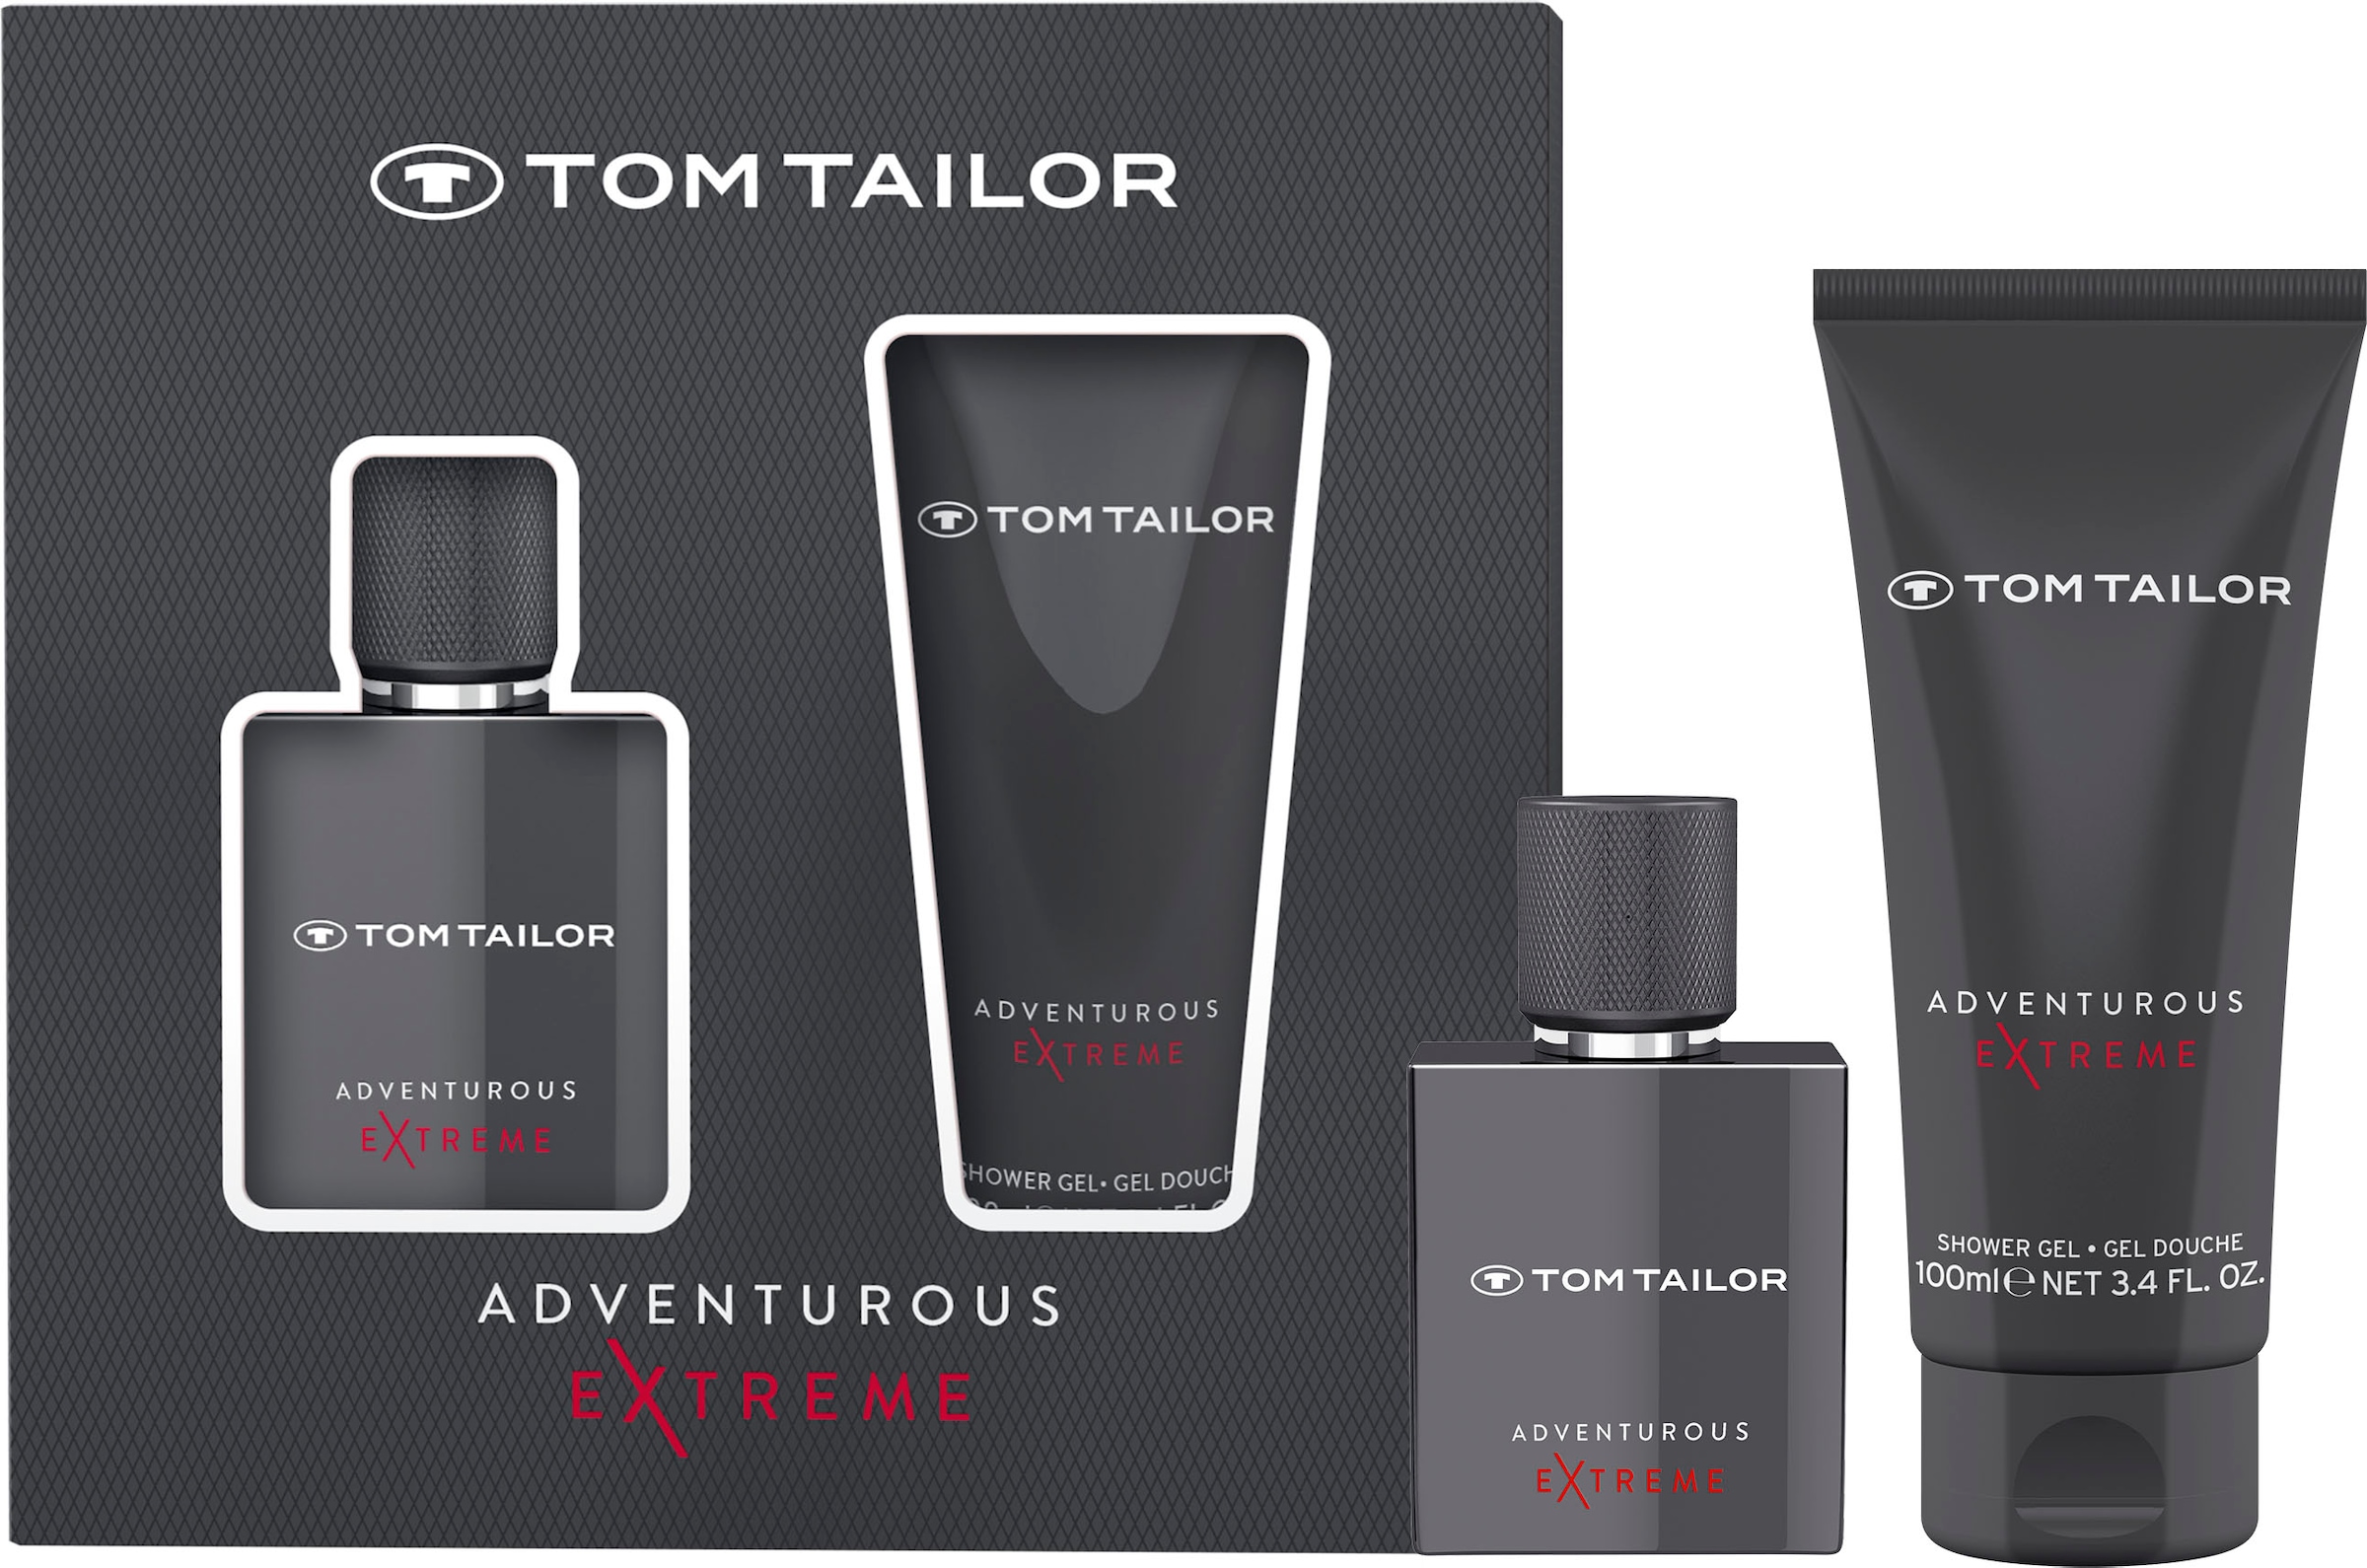 TOM TAILOR Eau 100ml«, him, EdT, Duschgel SG Extreme Parfum (2 + for UNIVERSAL de tlg.), 30ml kaufen | Toilette »Adventurous Männerduft